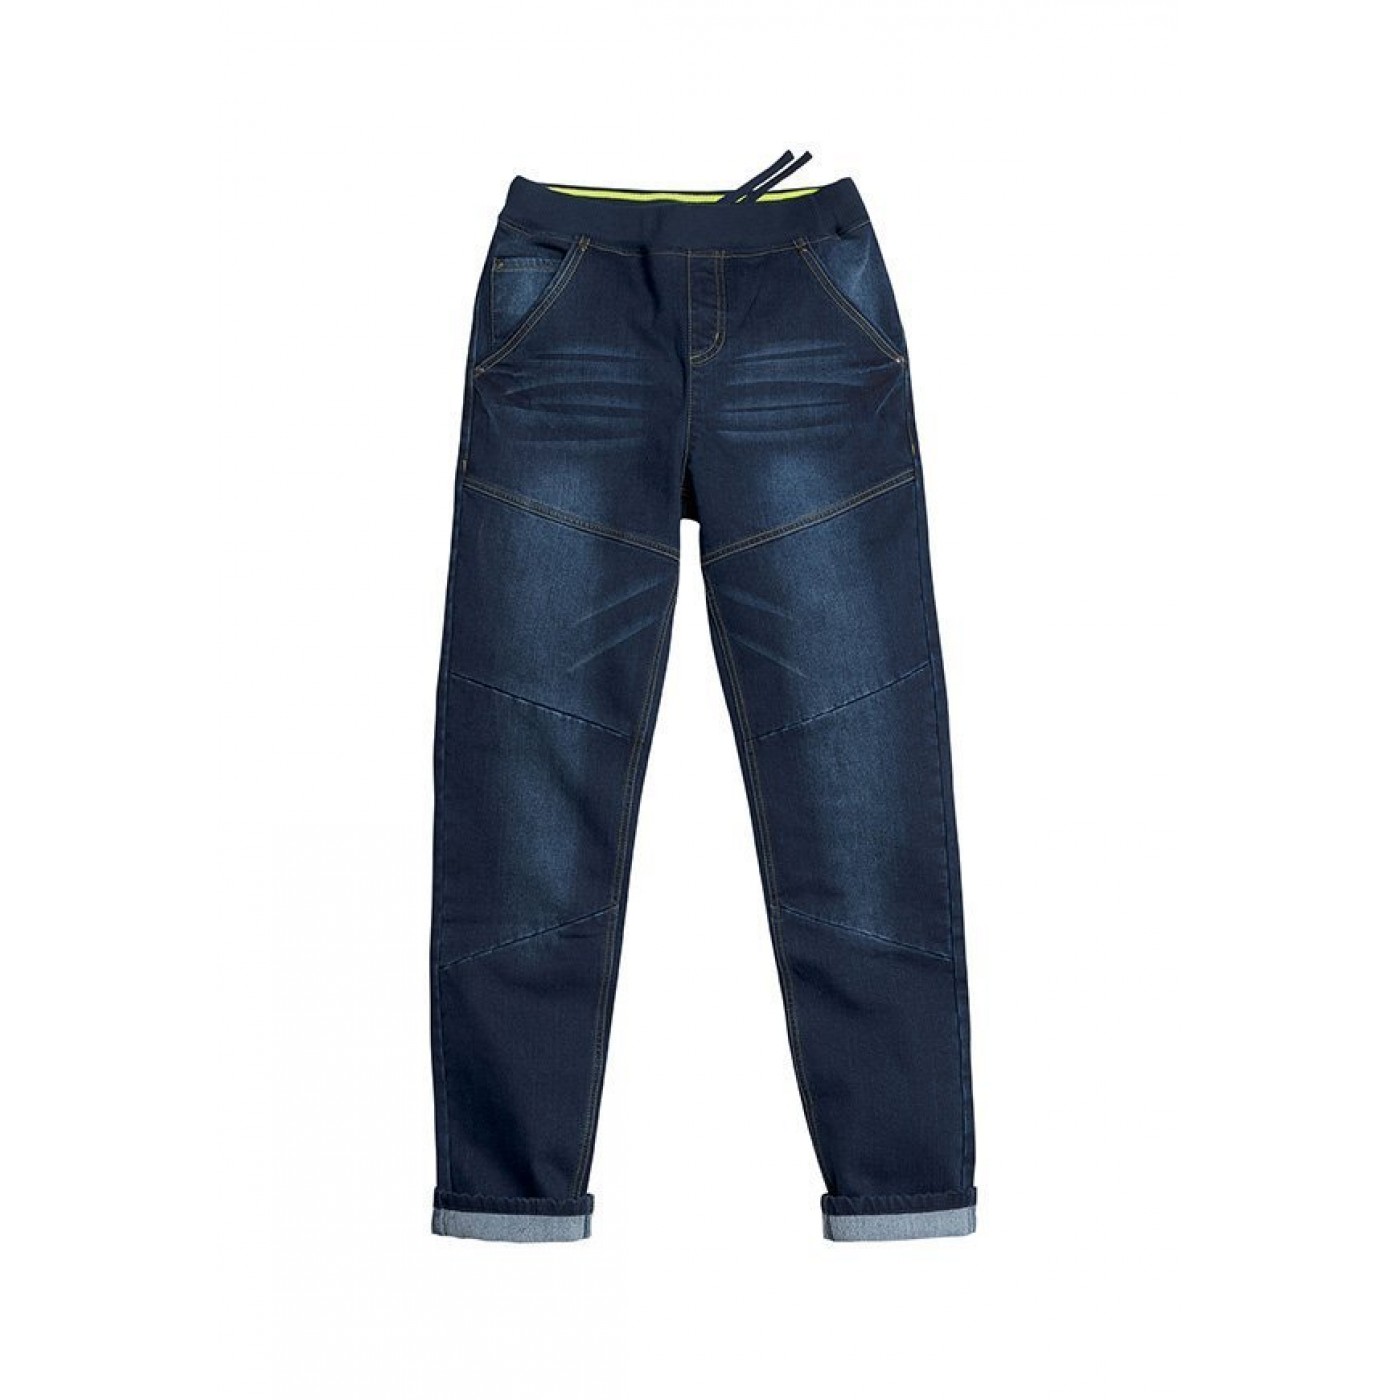 Брюки джинсы мальчиков. Пеликан джинсы BWP 4043. Bwp7016 брюки для мальчиков. Брюки джинсовые для мальчиков. Брюки джинсы для мальчиков.